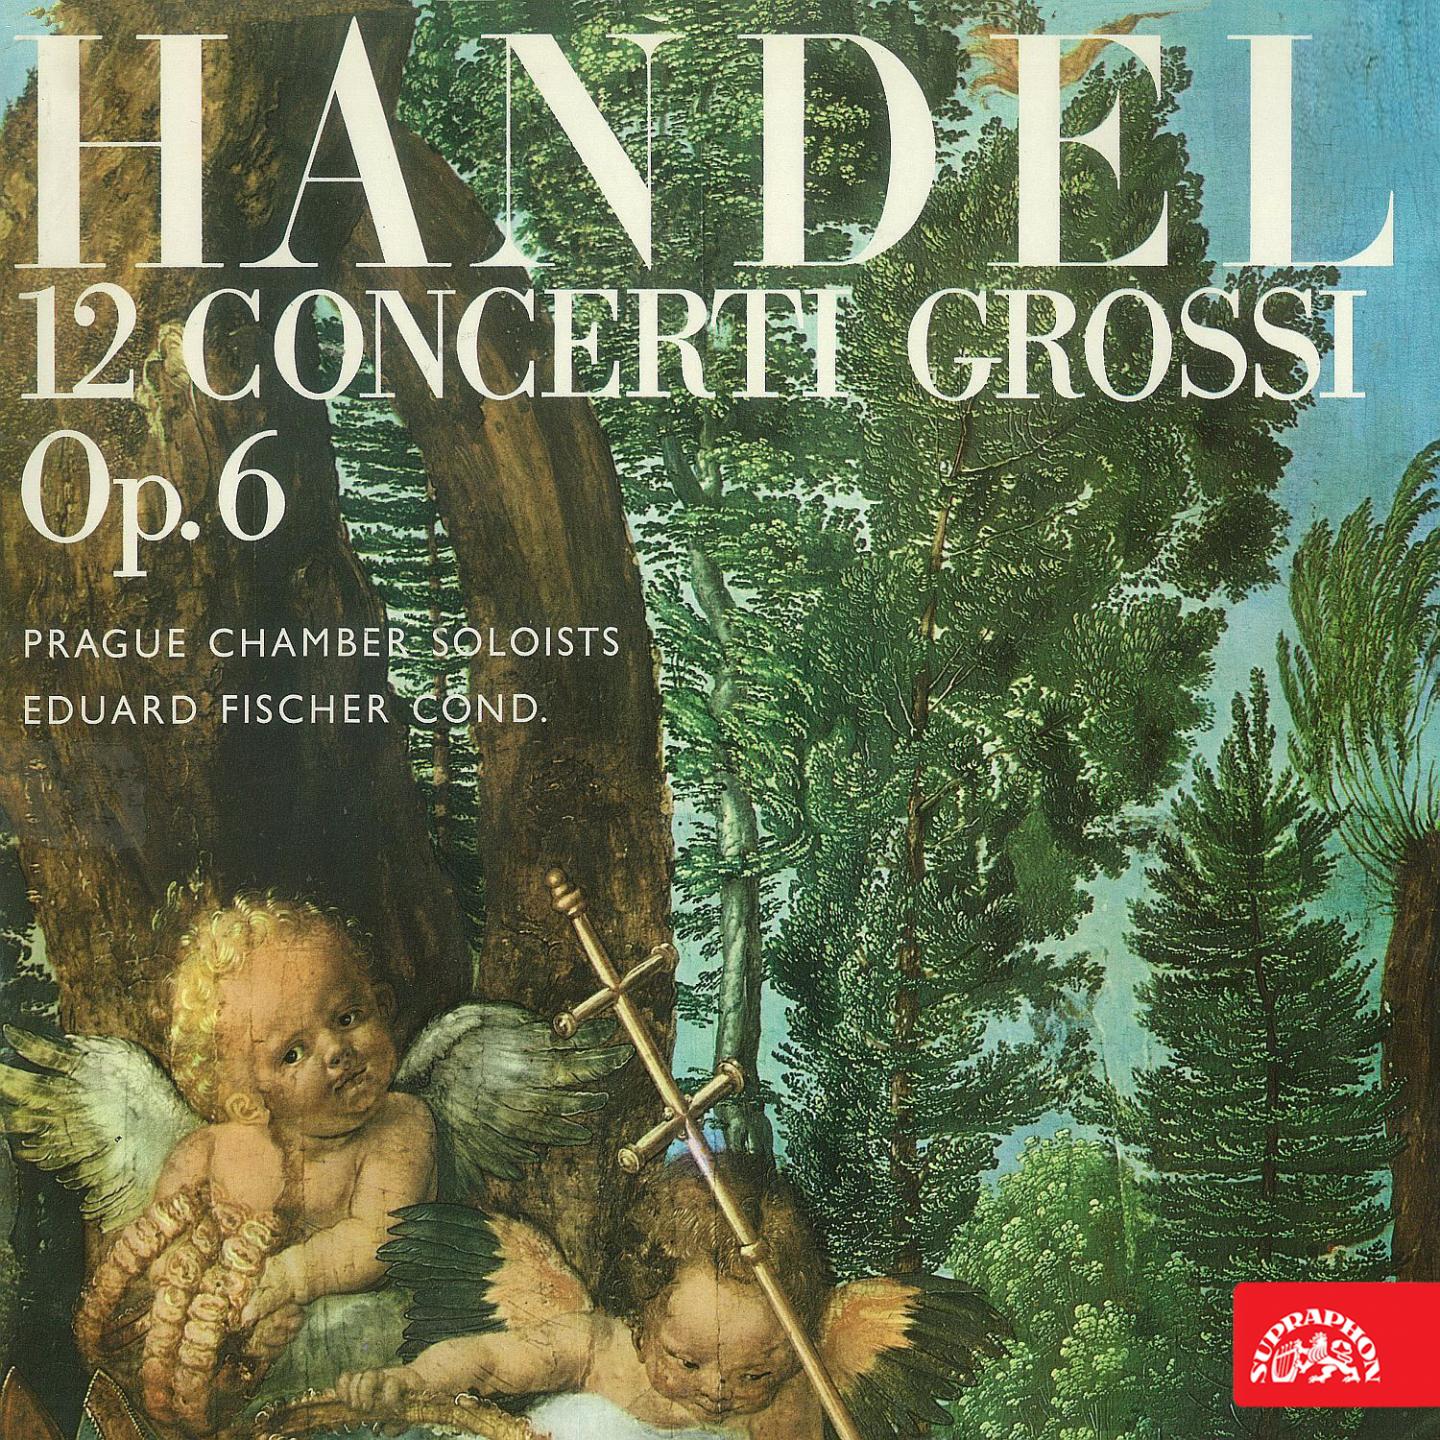 12 Concerti grossi, Op. 6, No. 3 in E Minor, HWV 321: III. Allegro